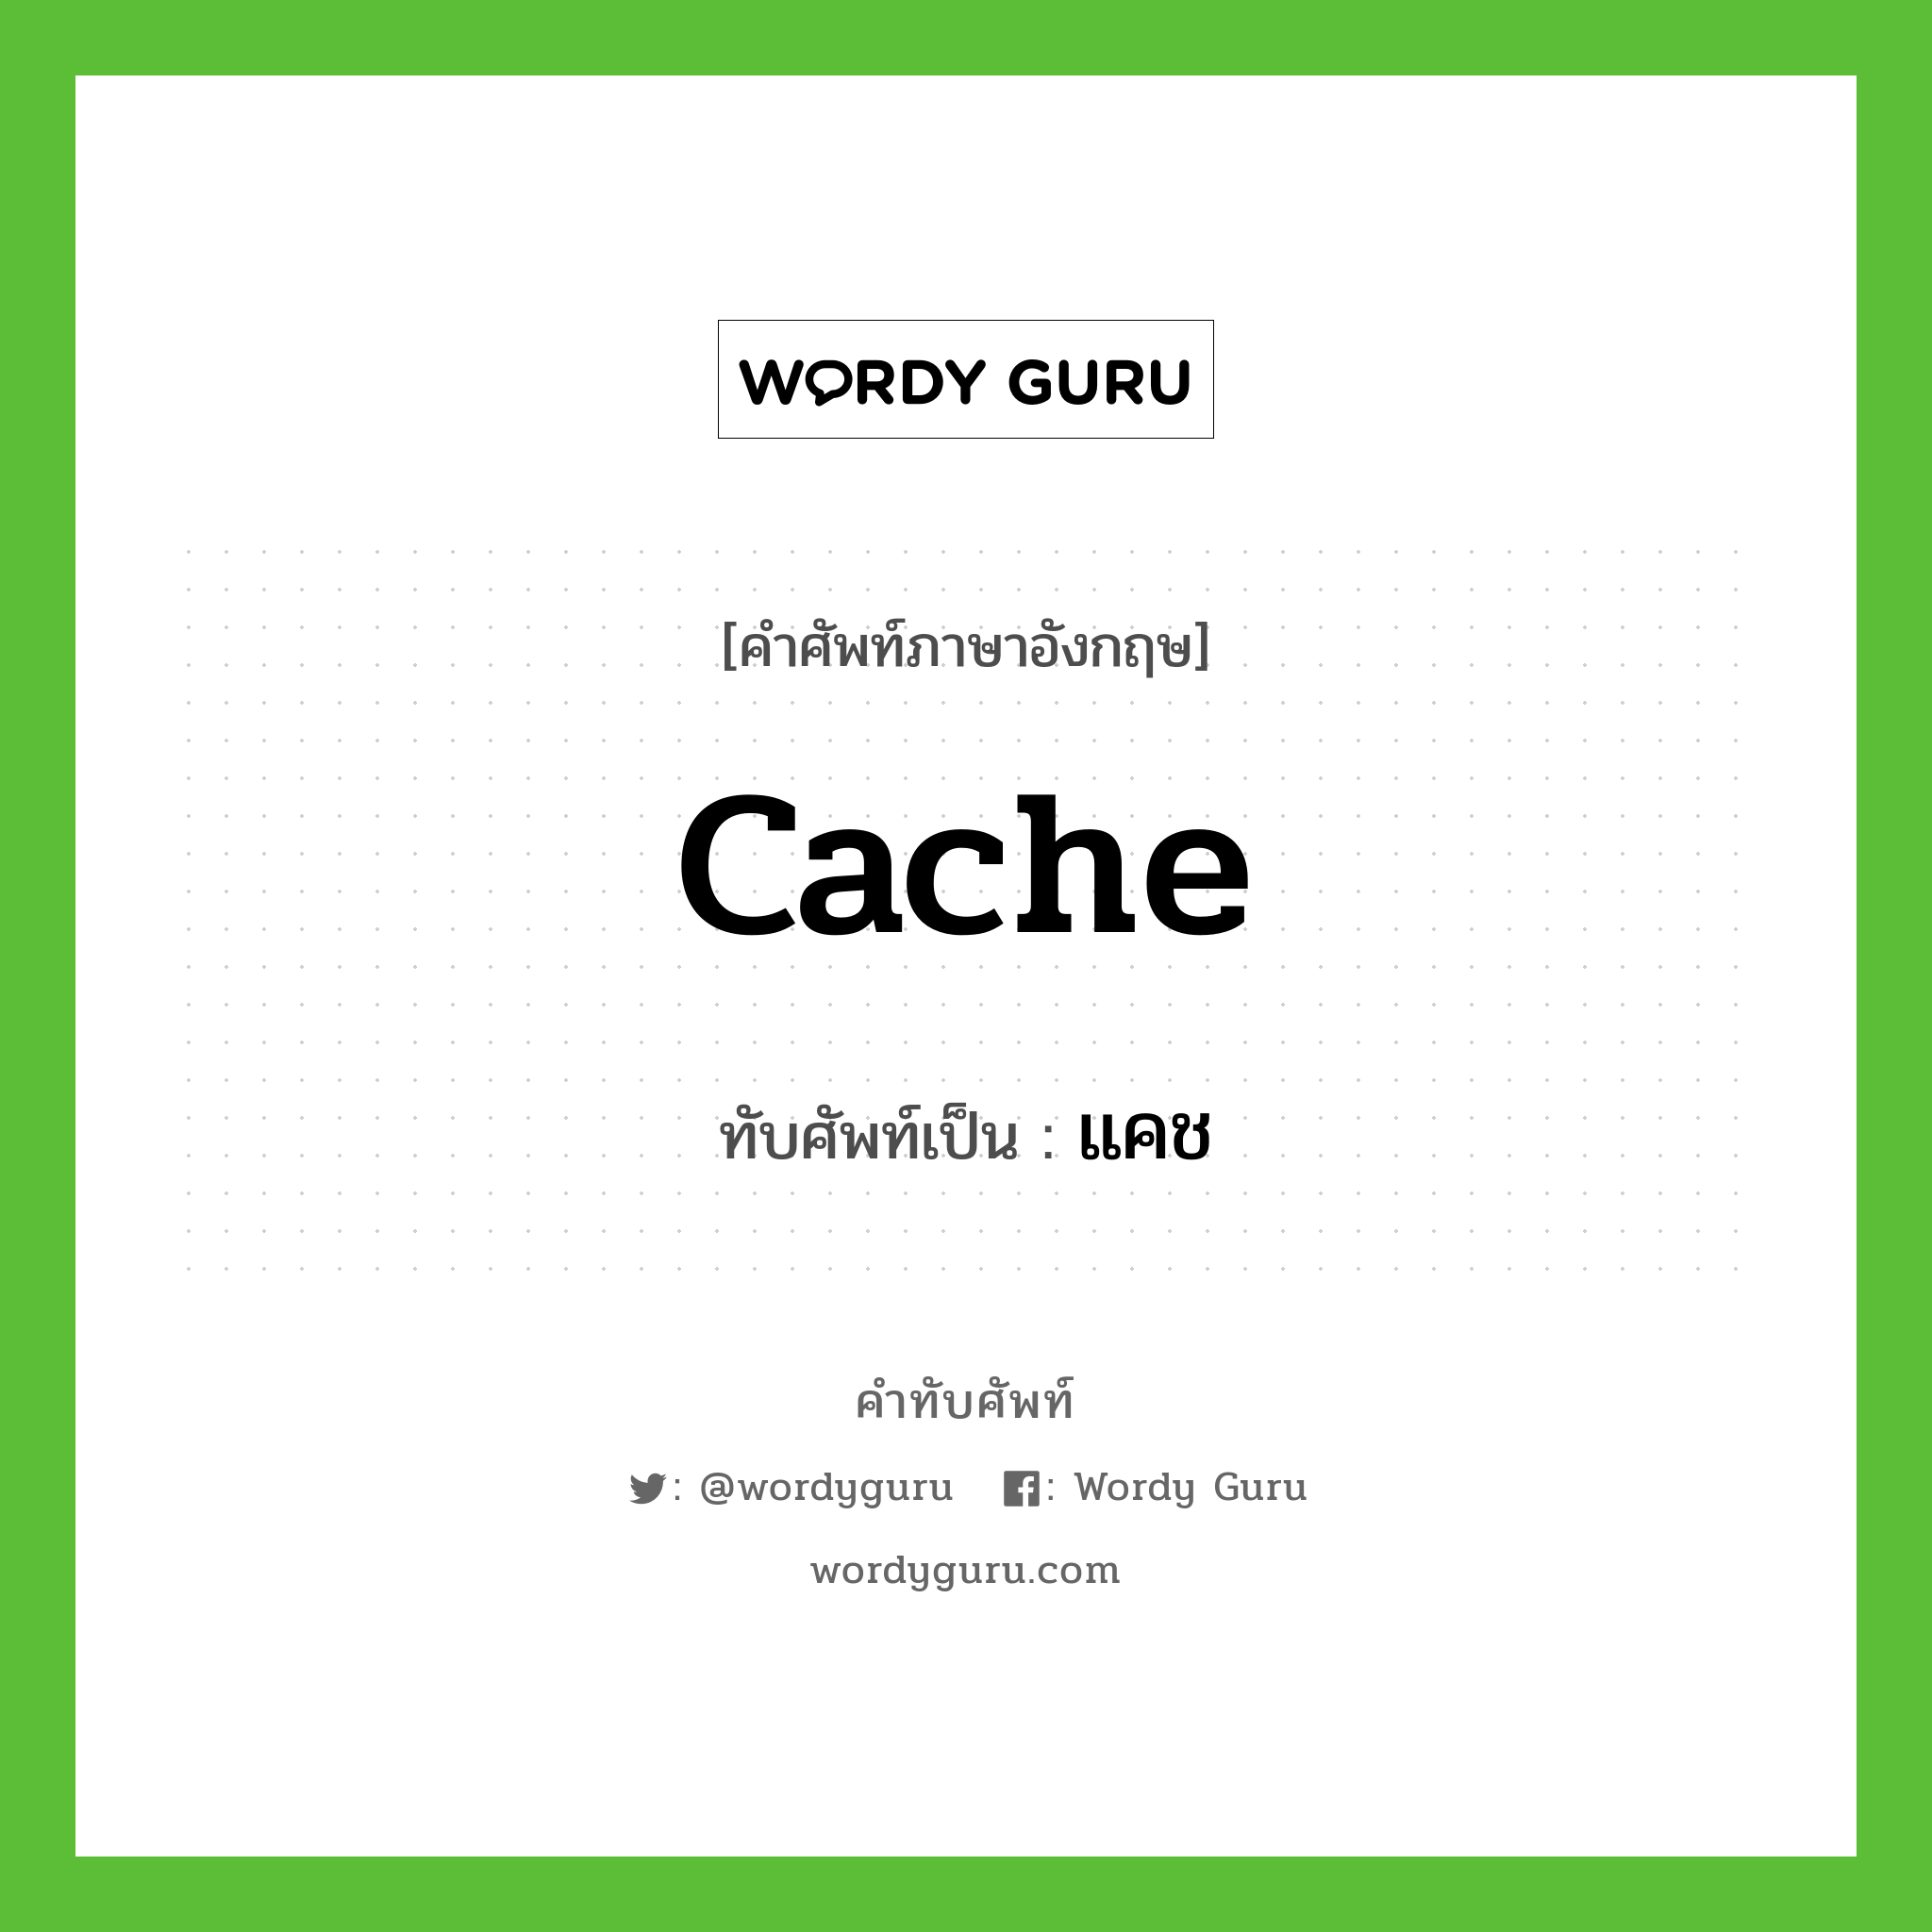 cache เขียนเป็นคำไทยว่าอะไร?, คำศัพท์ภาษาอังกฤษ cache ทับศัพท์เป็น แคช